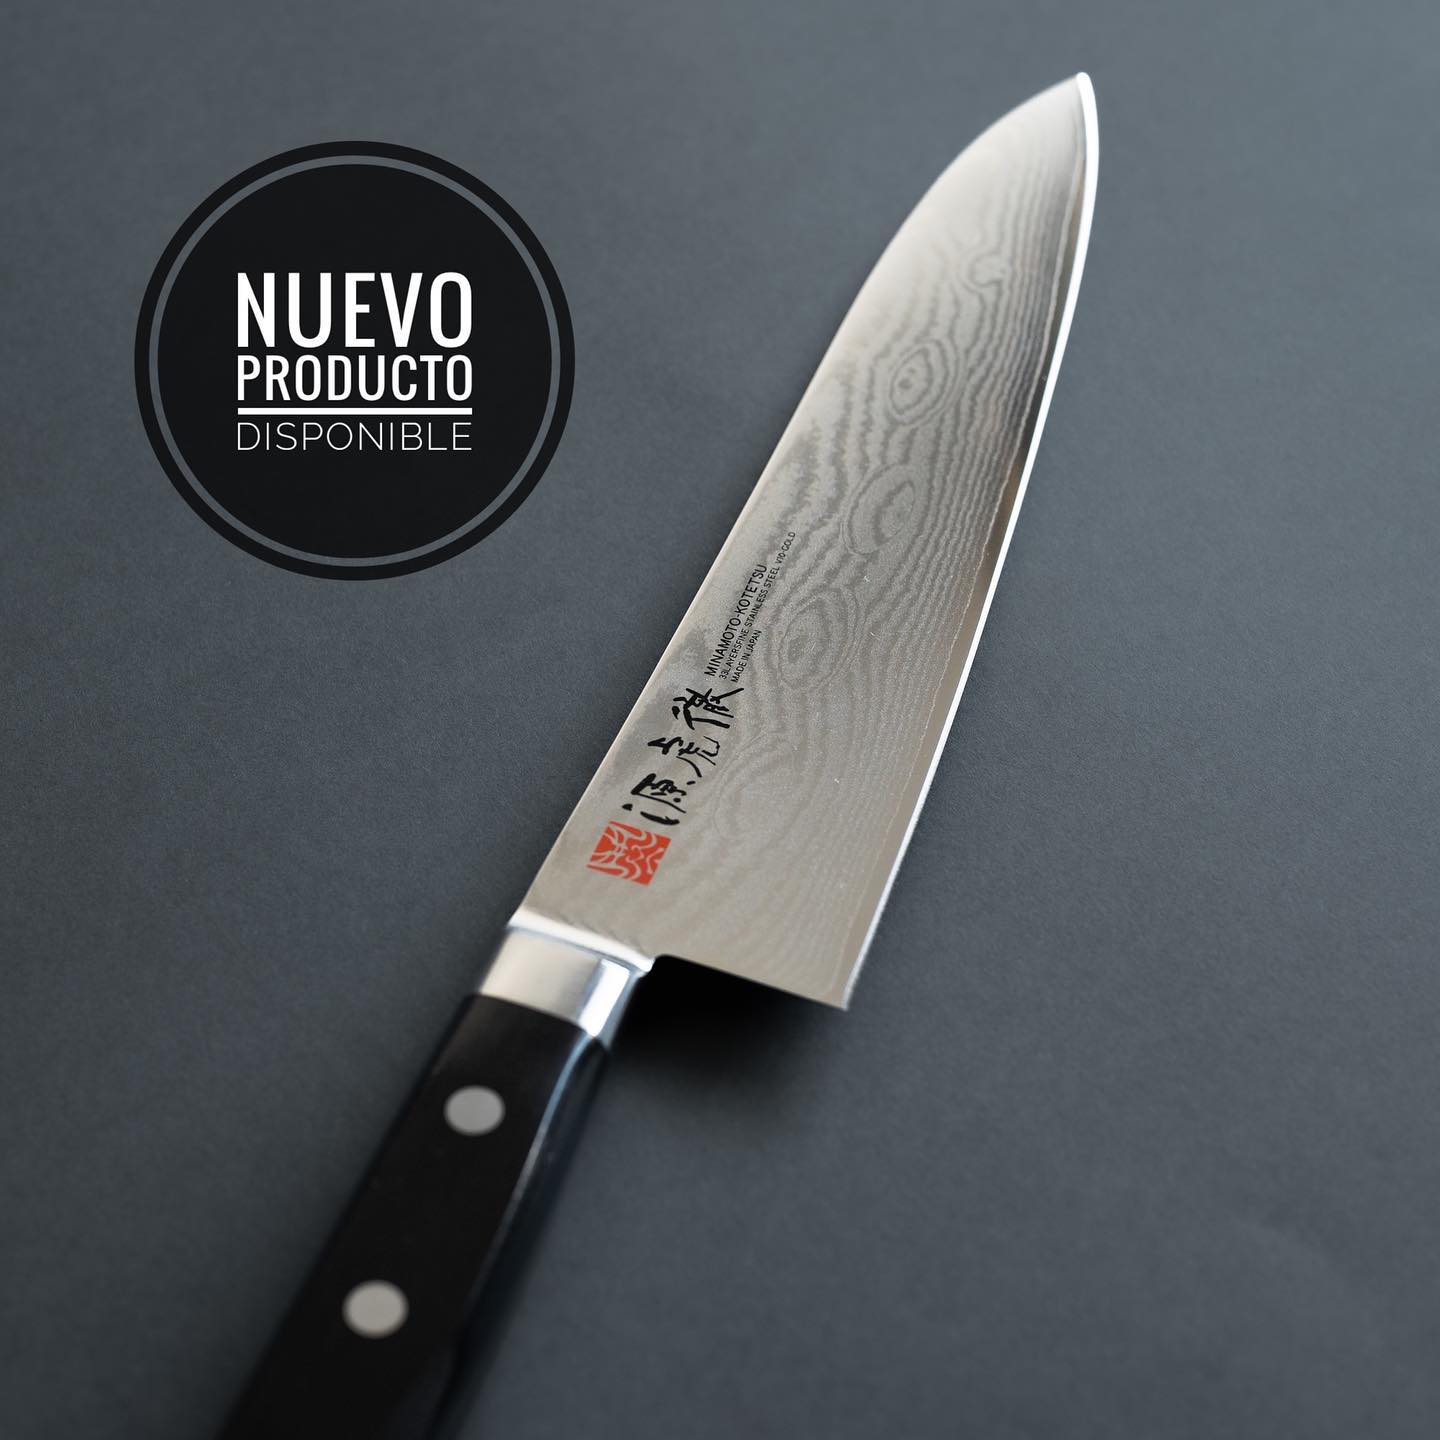 Nuevo Cuchillo Gyuto Minamoto disponible en nuestra tienda web.
Encuentra todos los detalles visitándonos en www.teloafilo.cl

.
.
#teloafilo #afilado #cuchillo #piedra #filo #cocina #cuchillosjaponeses #cocinero #restaurant #chef #santiago #chile #instachile #chilegram #corte #afilador #gastronomia #whetstone #sharpening #knives #edge #sharp #grind